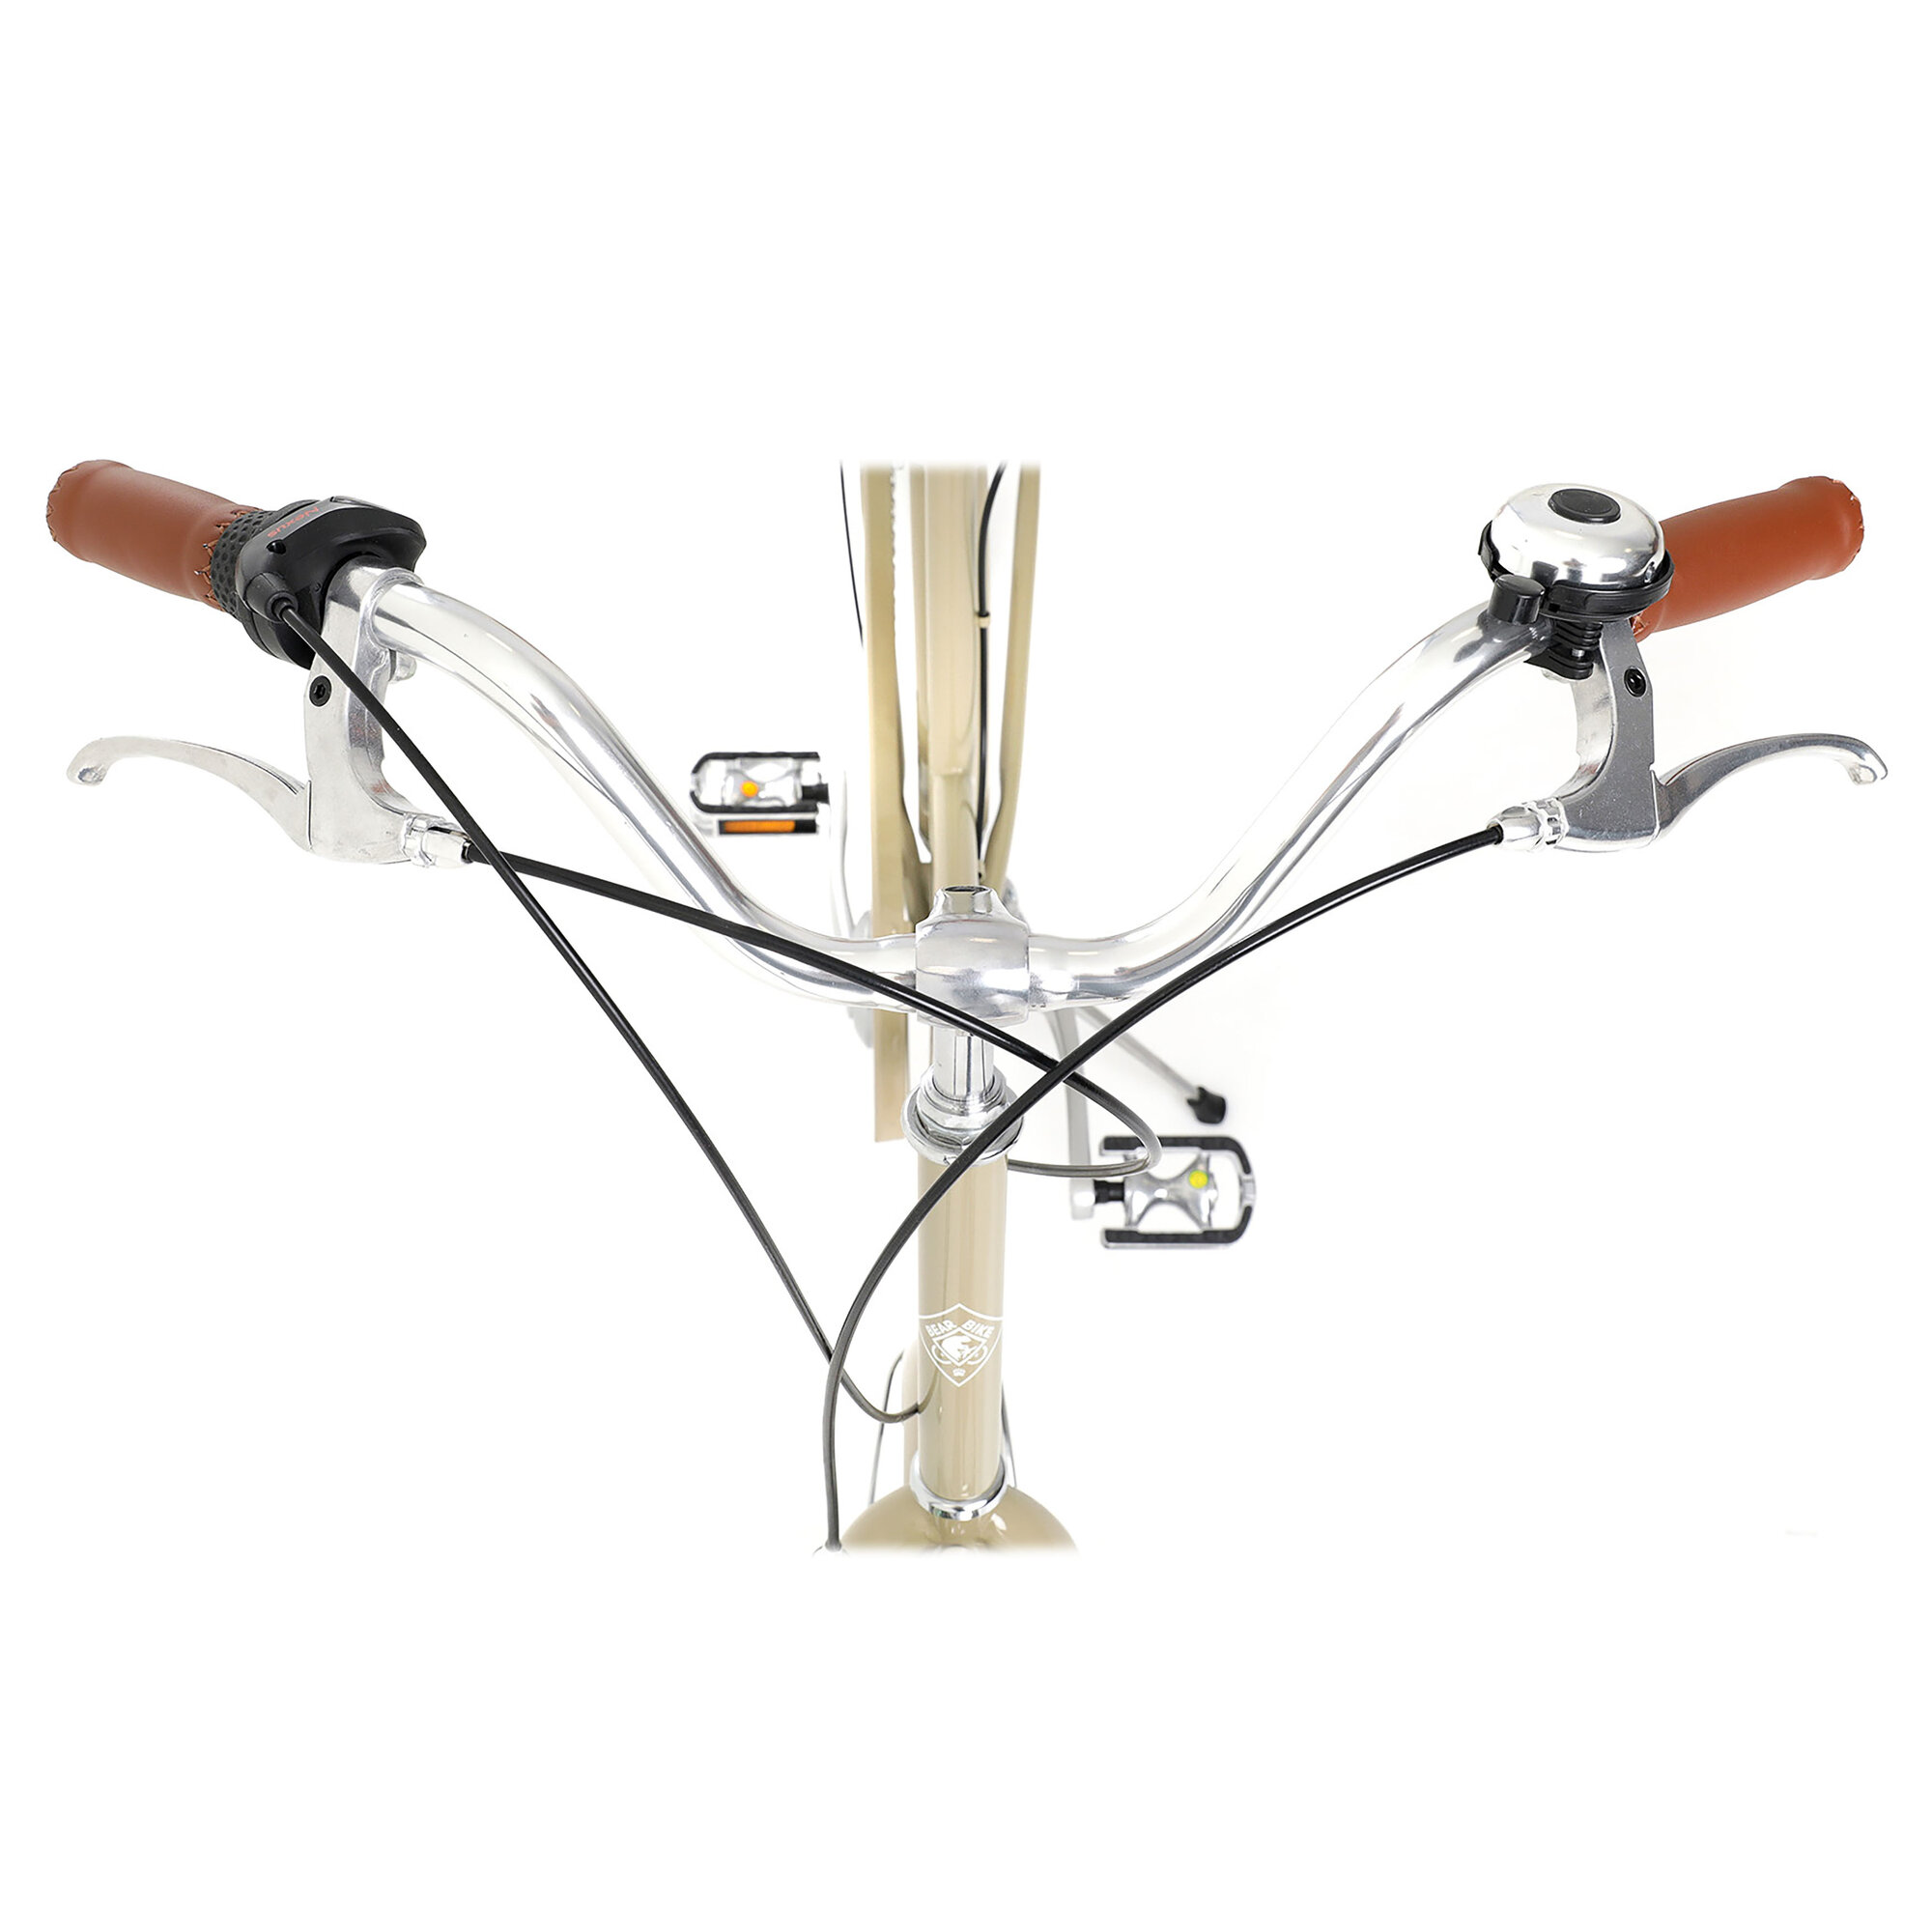 Велосипед BEARBIKE Algeria (2021), городской (взрослый), рама 18", колеса 28", кремовый, 15.55кг [1bkb1c183z02] - фото №9